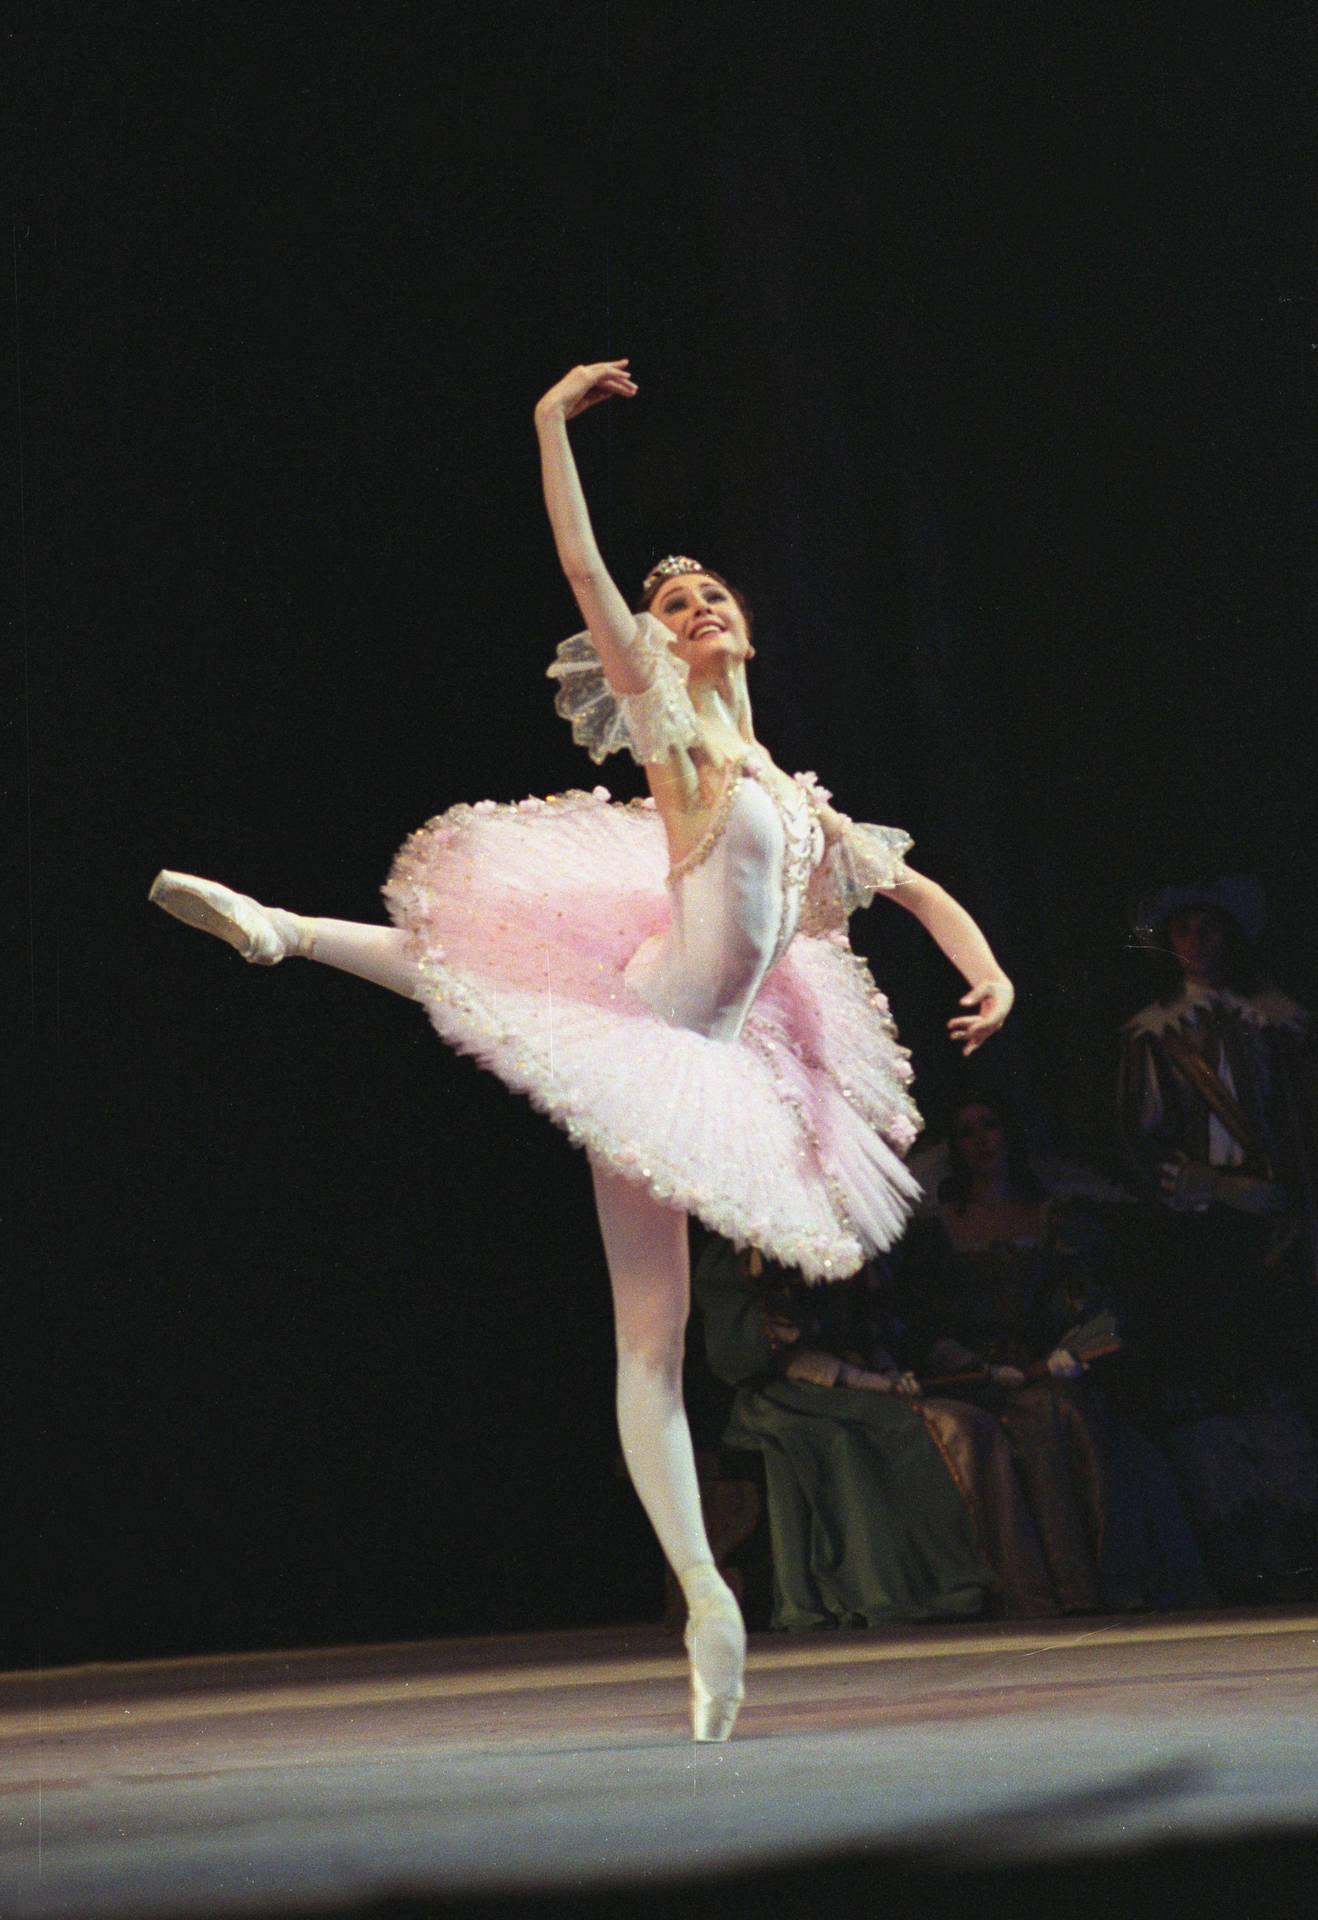 Bailarinade Ballet Actuando En El Escenario Fondo de pantalla